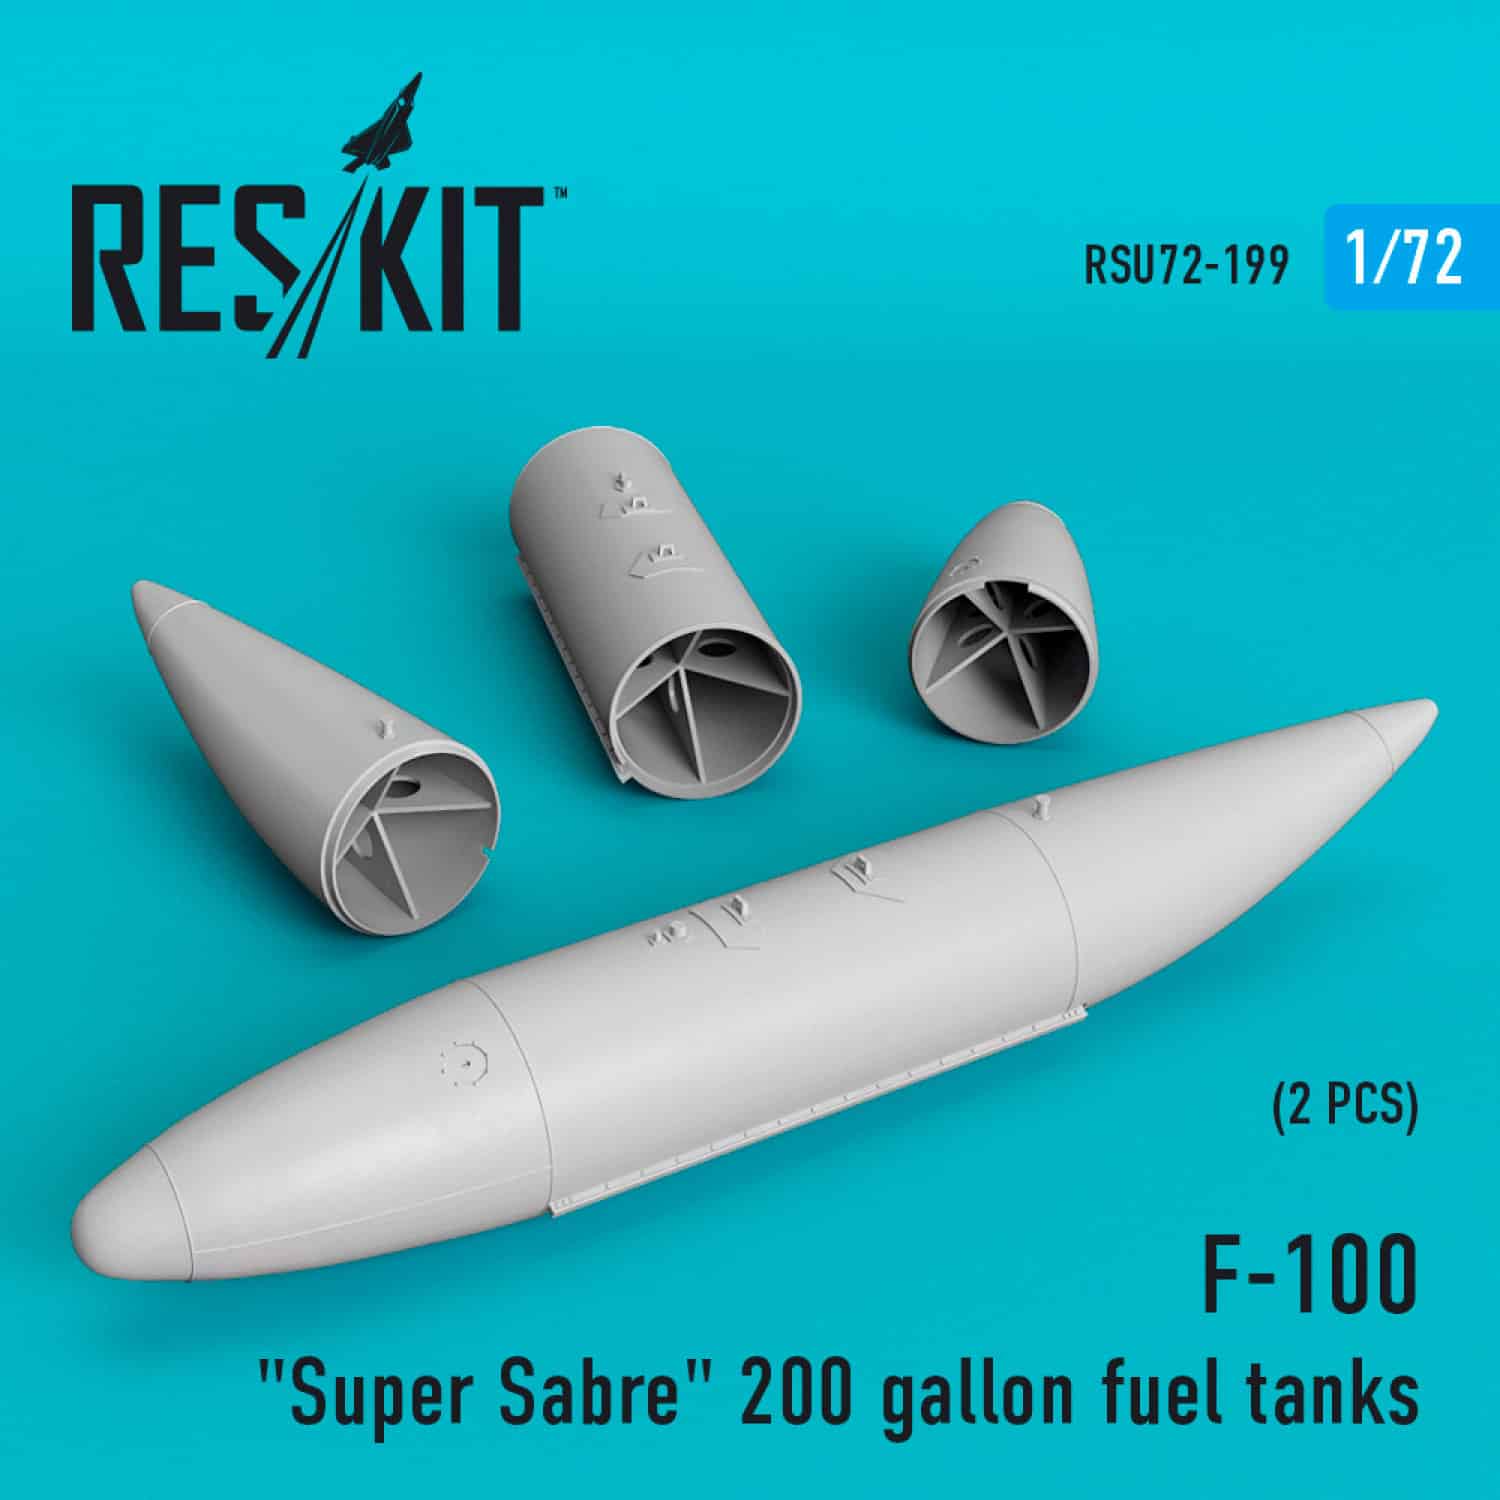 Reskit 172 F-100 Super Sabre 200 gallon fuel tanks